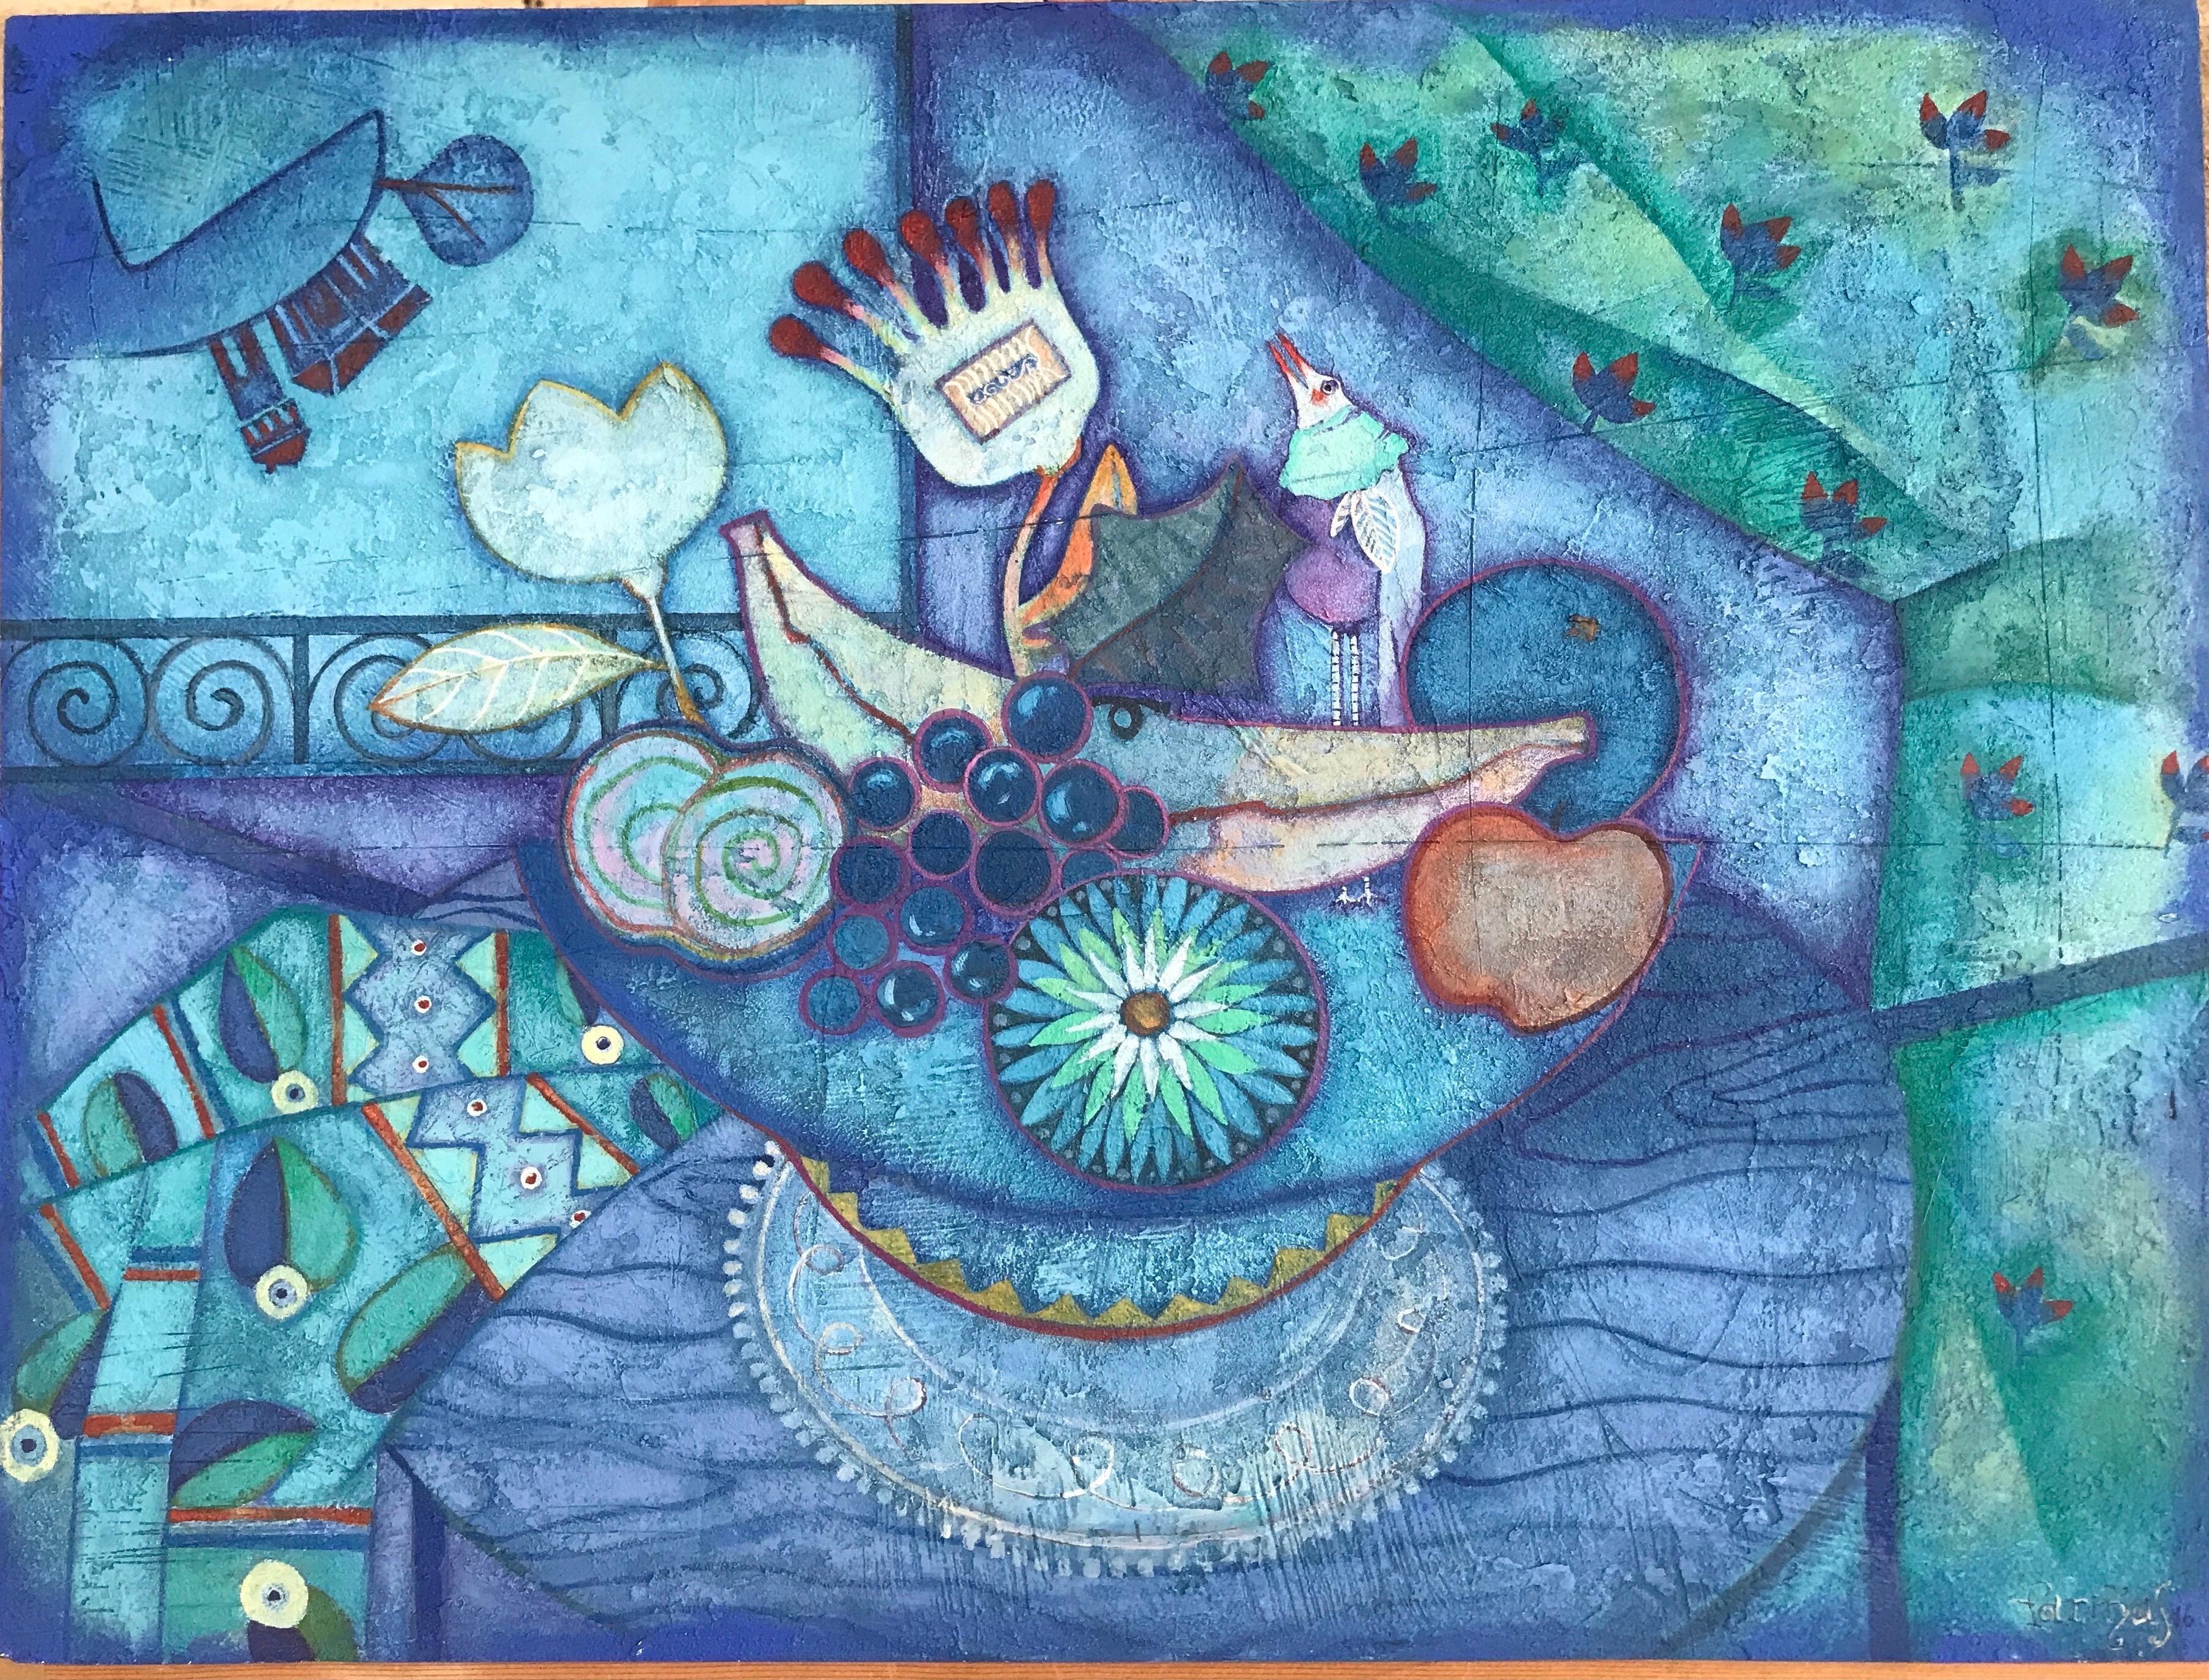 Soirée en paix. Nature morte d'art populaire bleu symbolique de Raquel Farias - Painting de Raquel Fariñas